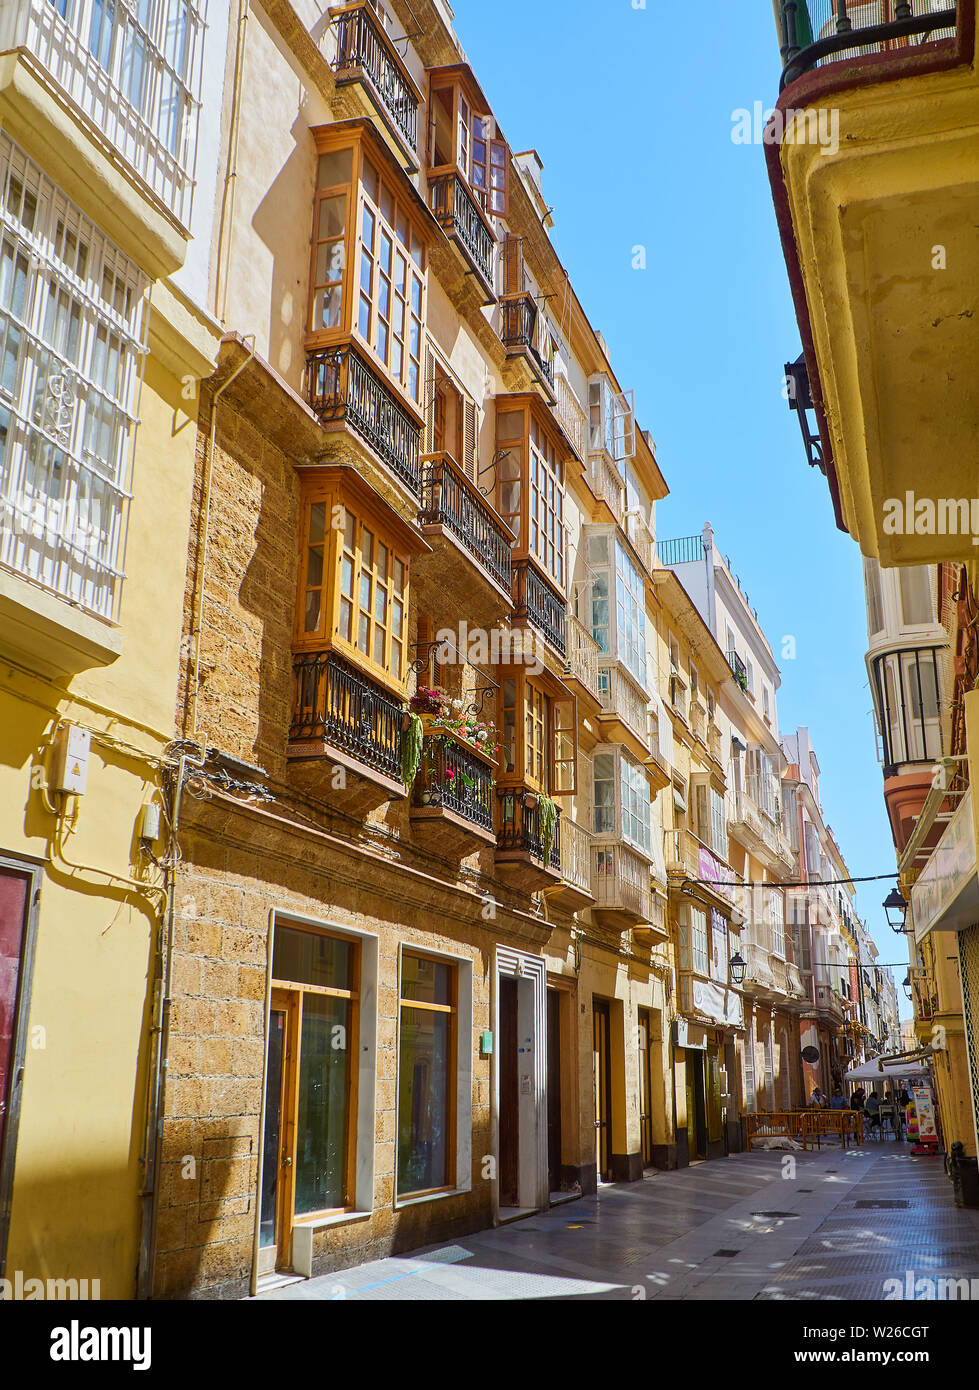 Cadix, Espagne - Juin 22, 2019. Rue typique de l'Andalousie, San Jose street. Cadix, Andalousie, espagne. Banque D'Images